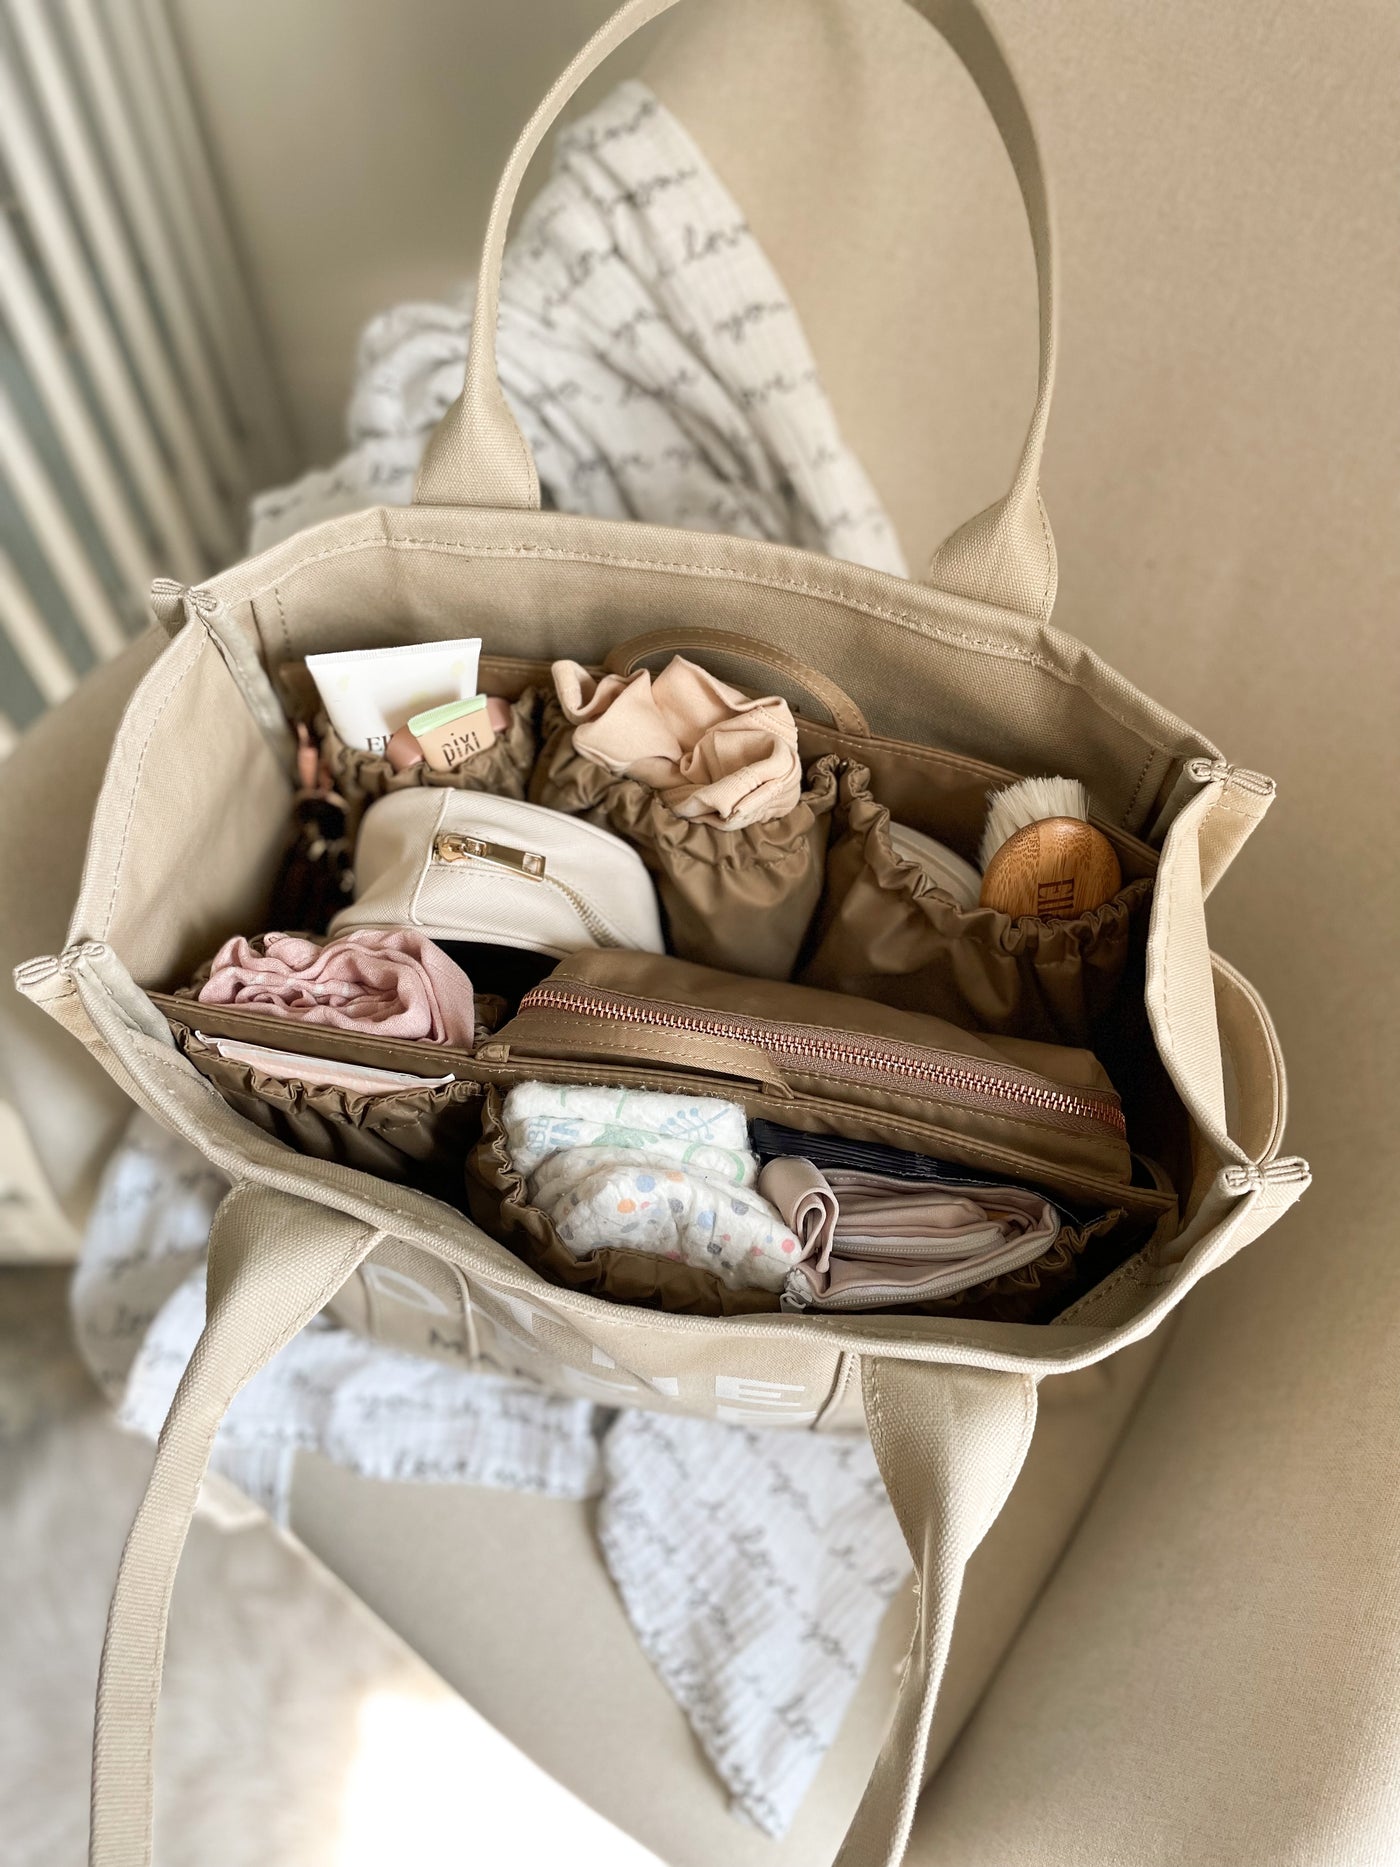 Make Any Bag a Diaper Bag with Tote Savvy — West Coast Capri